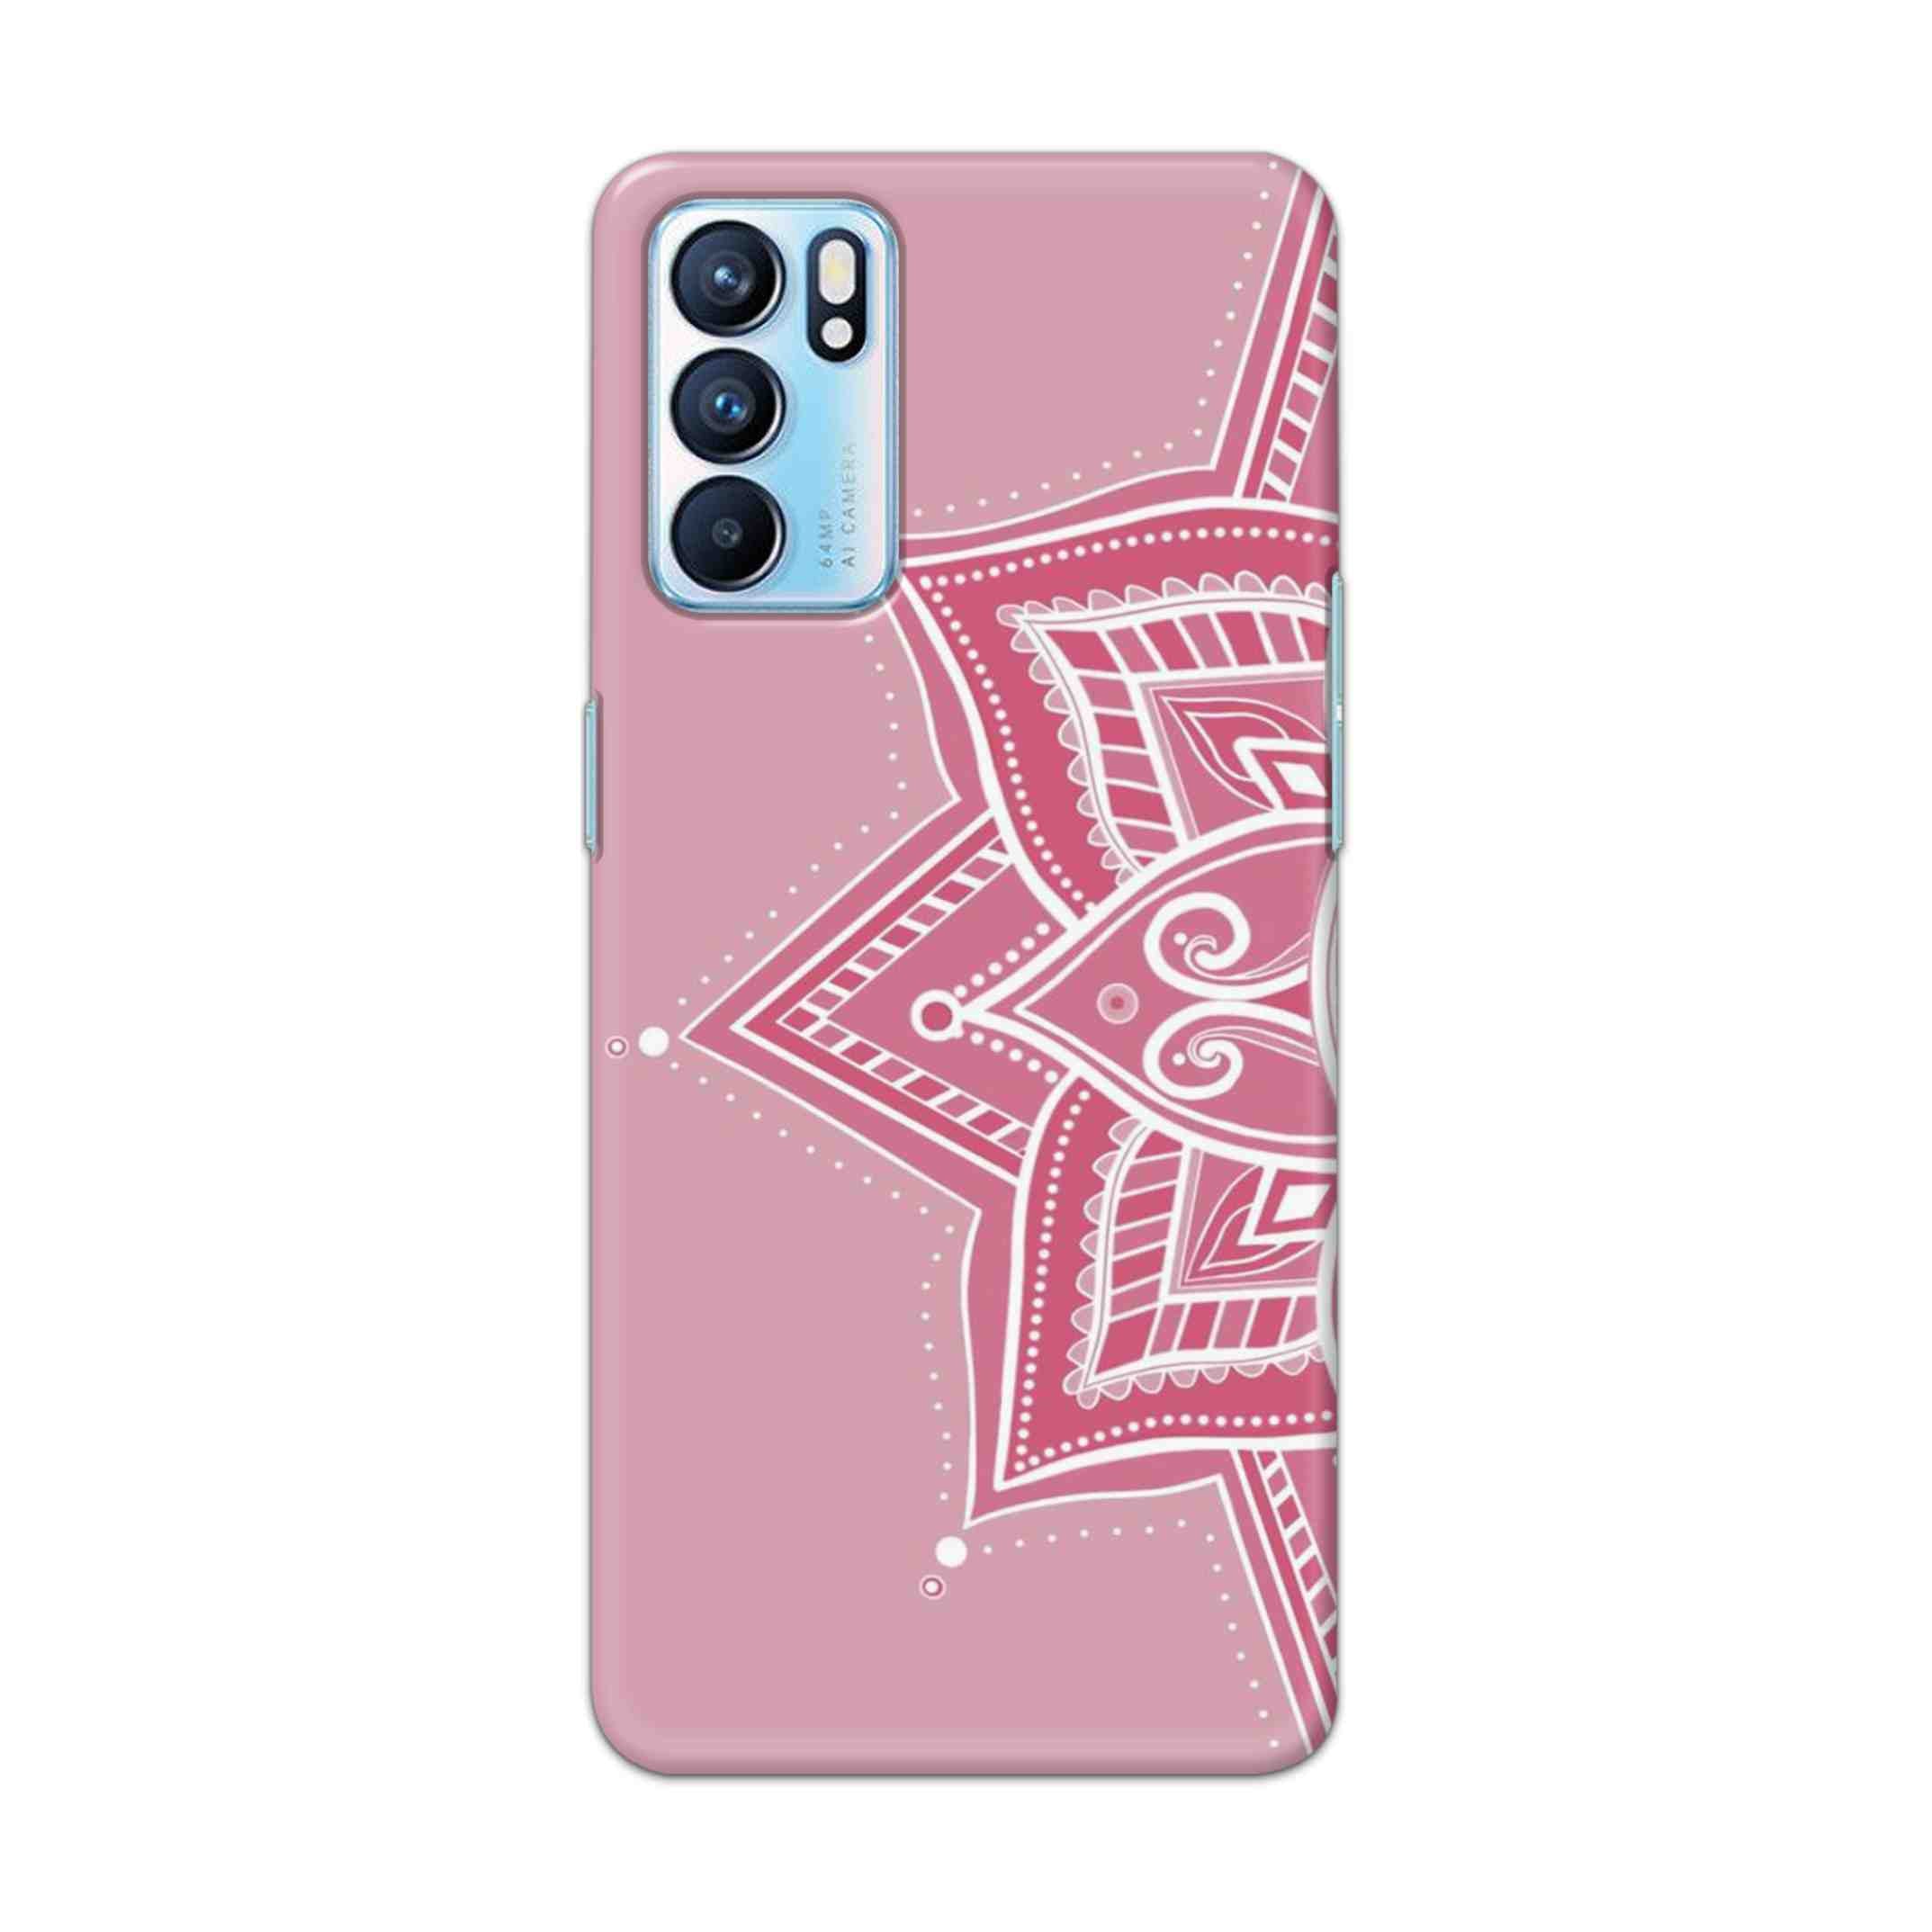 Buy Pink Rangoli Hard Back Mobile Phone Case Cover For OPPO RENO 6 5G Online